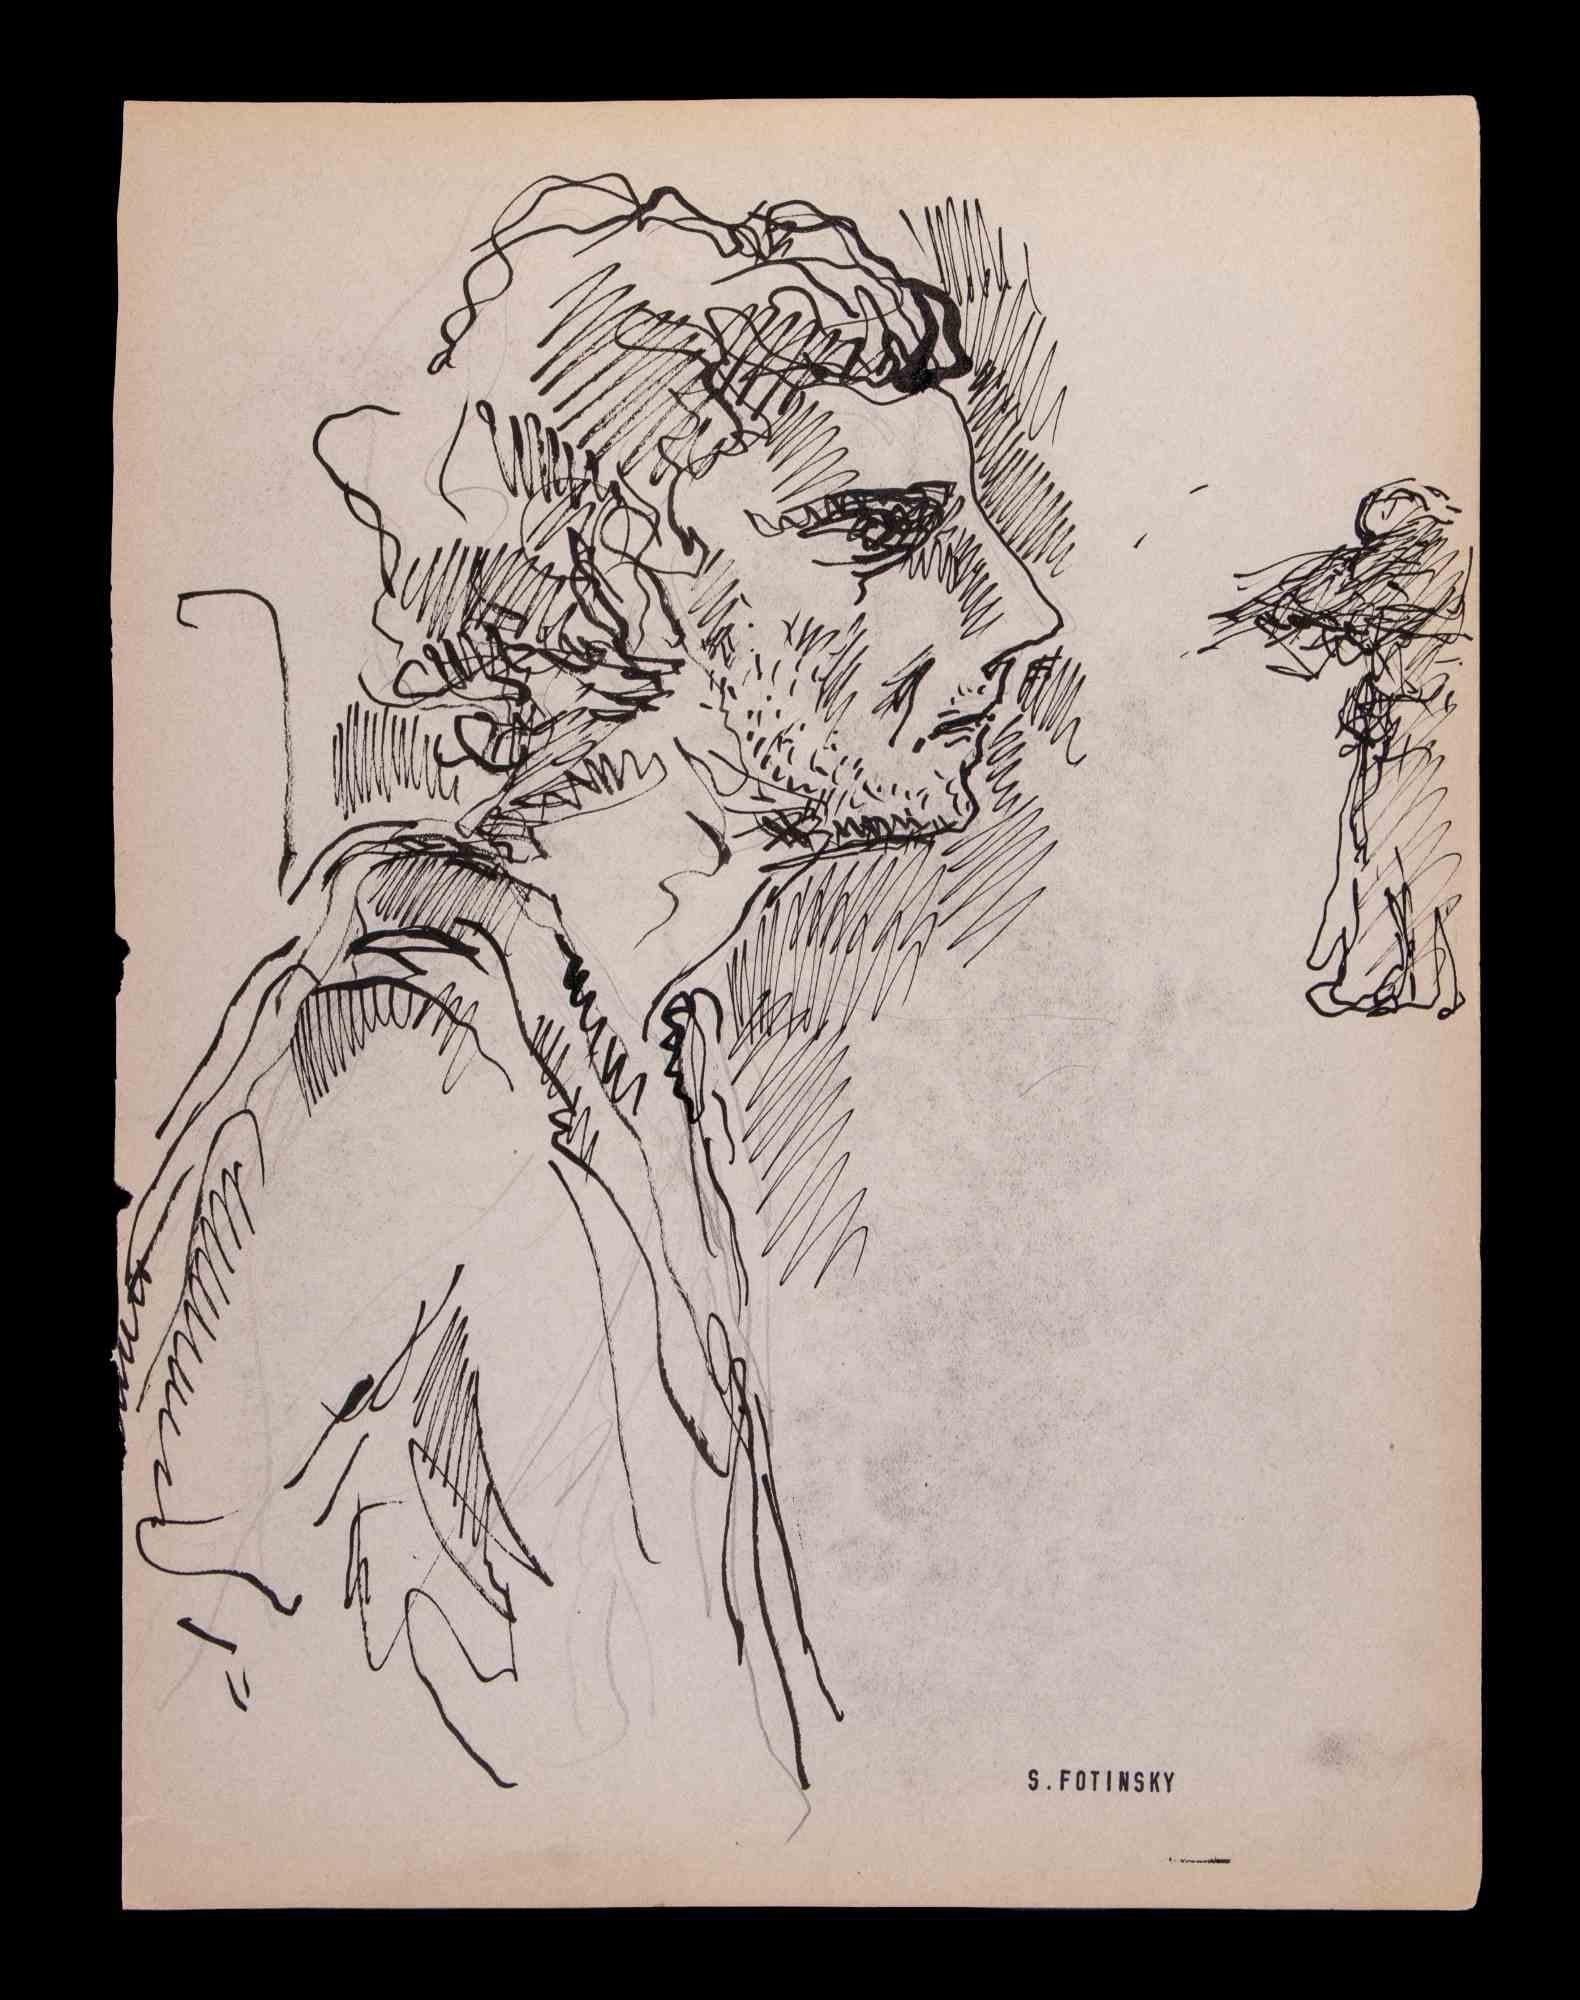 Das Profil eines Mannes ist ein Kunstwerk von Serge Fotinsky aus dem Jahr 1947. 

China-Tuschezeichnung.

Pad-Signatur des Künstlers rechts links.

27 x 20 cm.

Guter Zustand mit Ausnahme einiger zeitbedingter Abnutzungserscheinungen auf dem Papier.